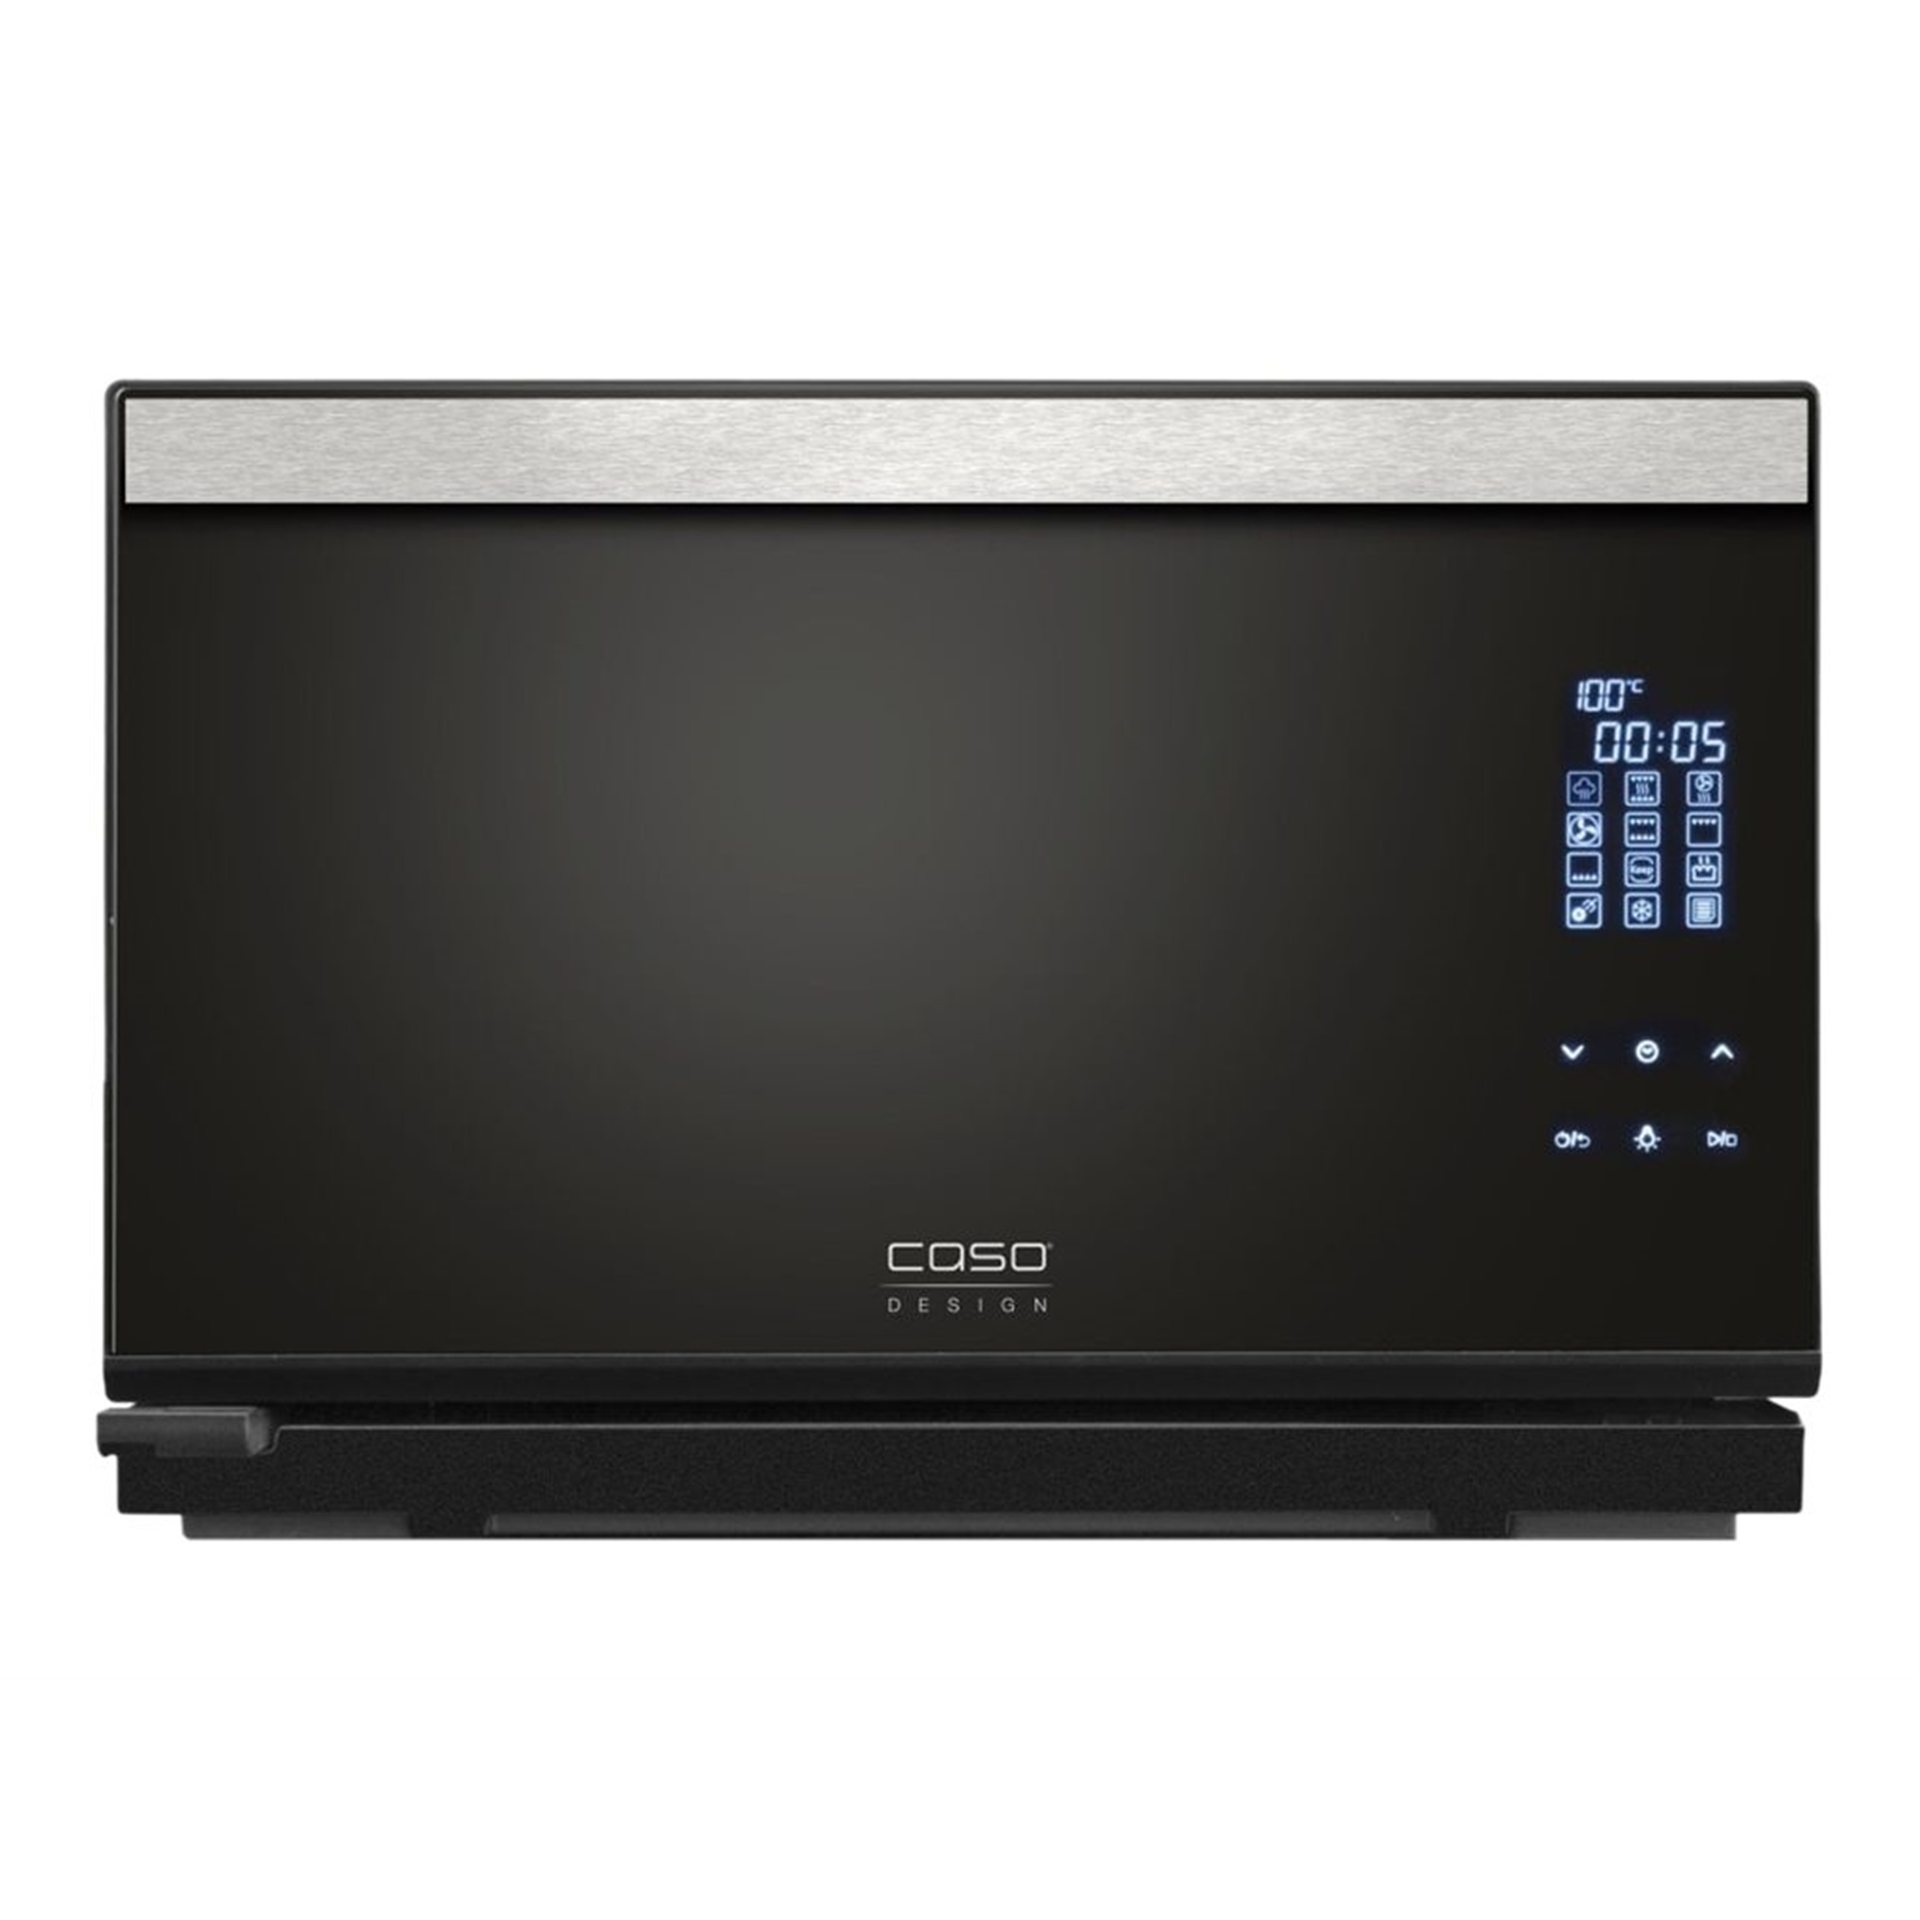 Caso Steam Chef steam oven 03066 25 L Electric 2100 W Black